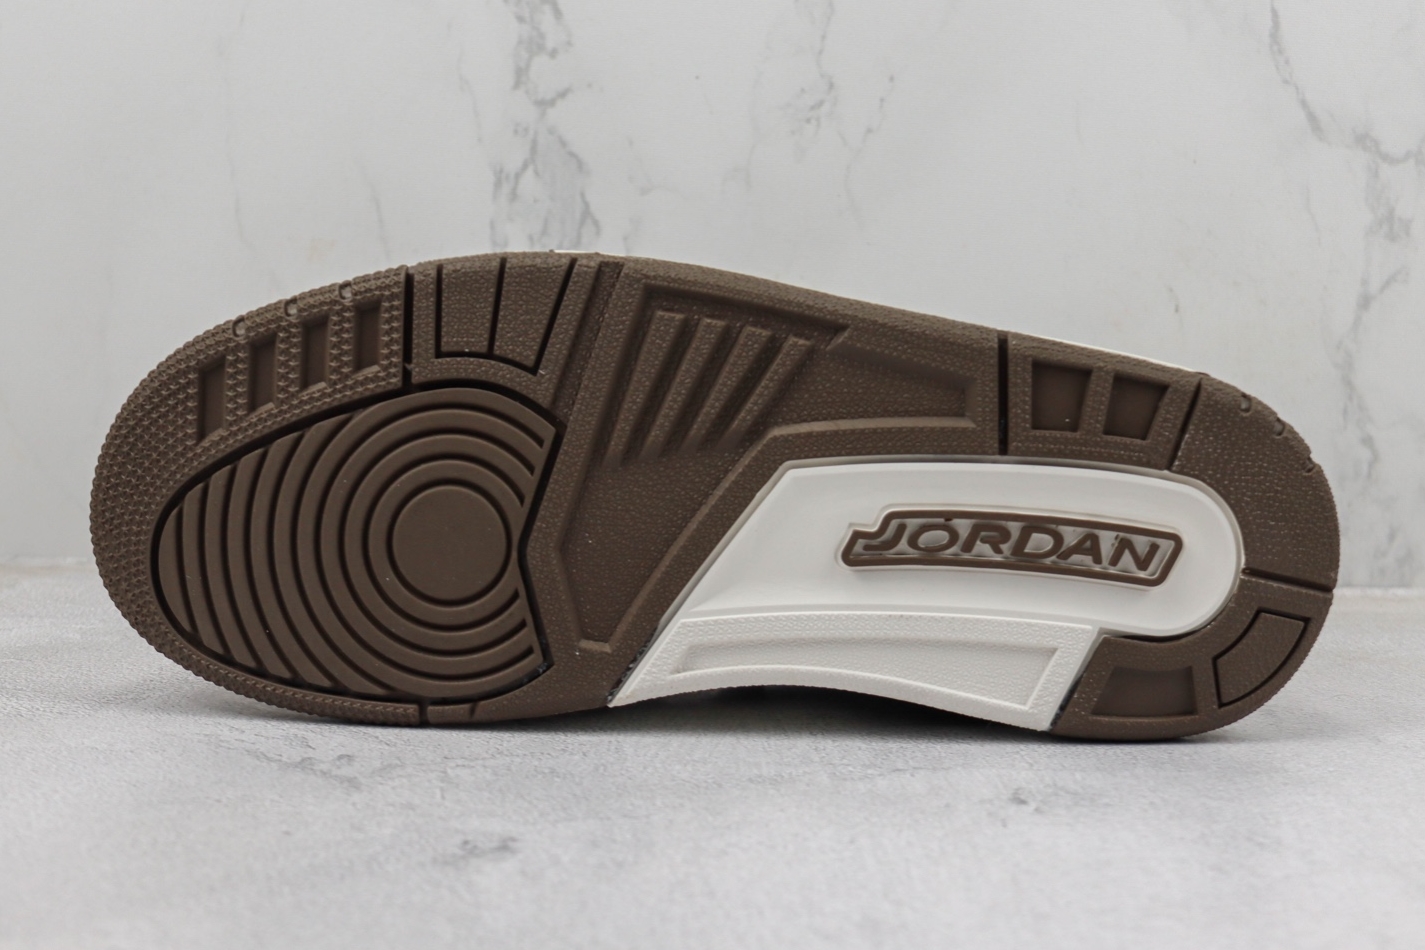 Air Jordan Legacy 312 Low 'Palomino' FQ6859-201 - Premium Sneaker Collection